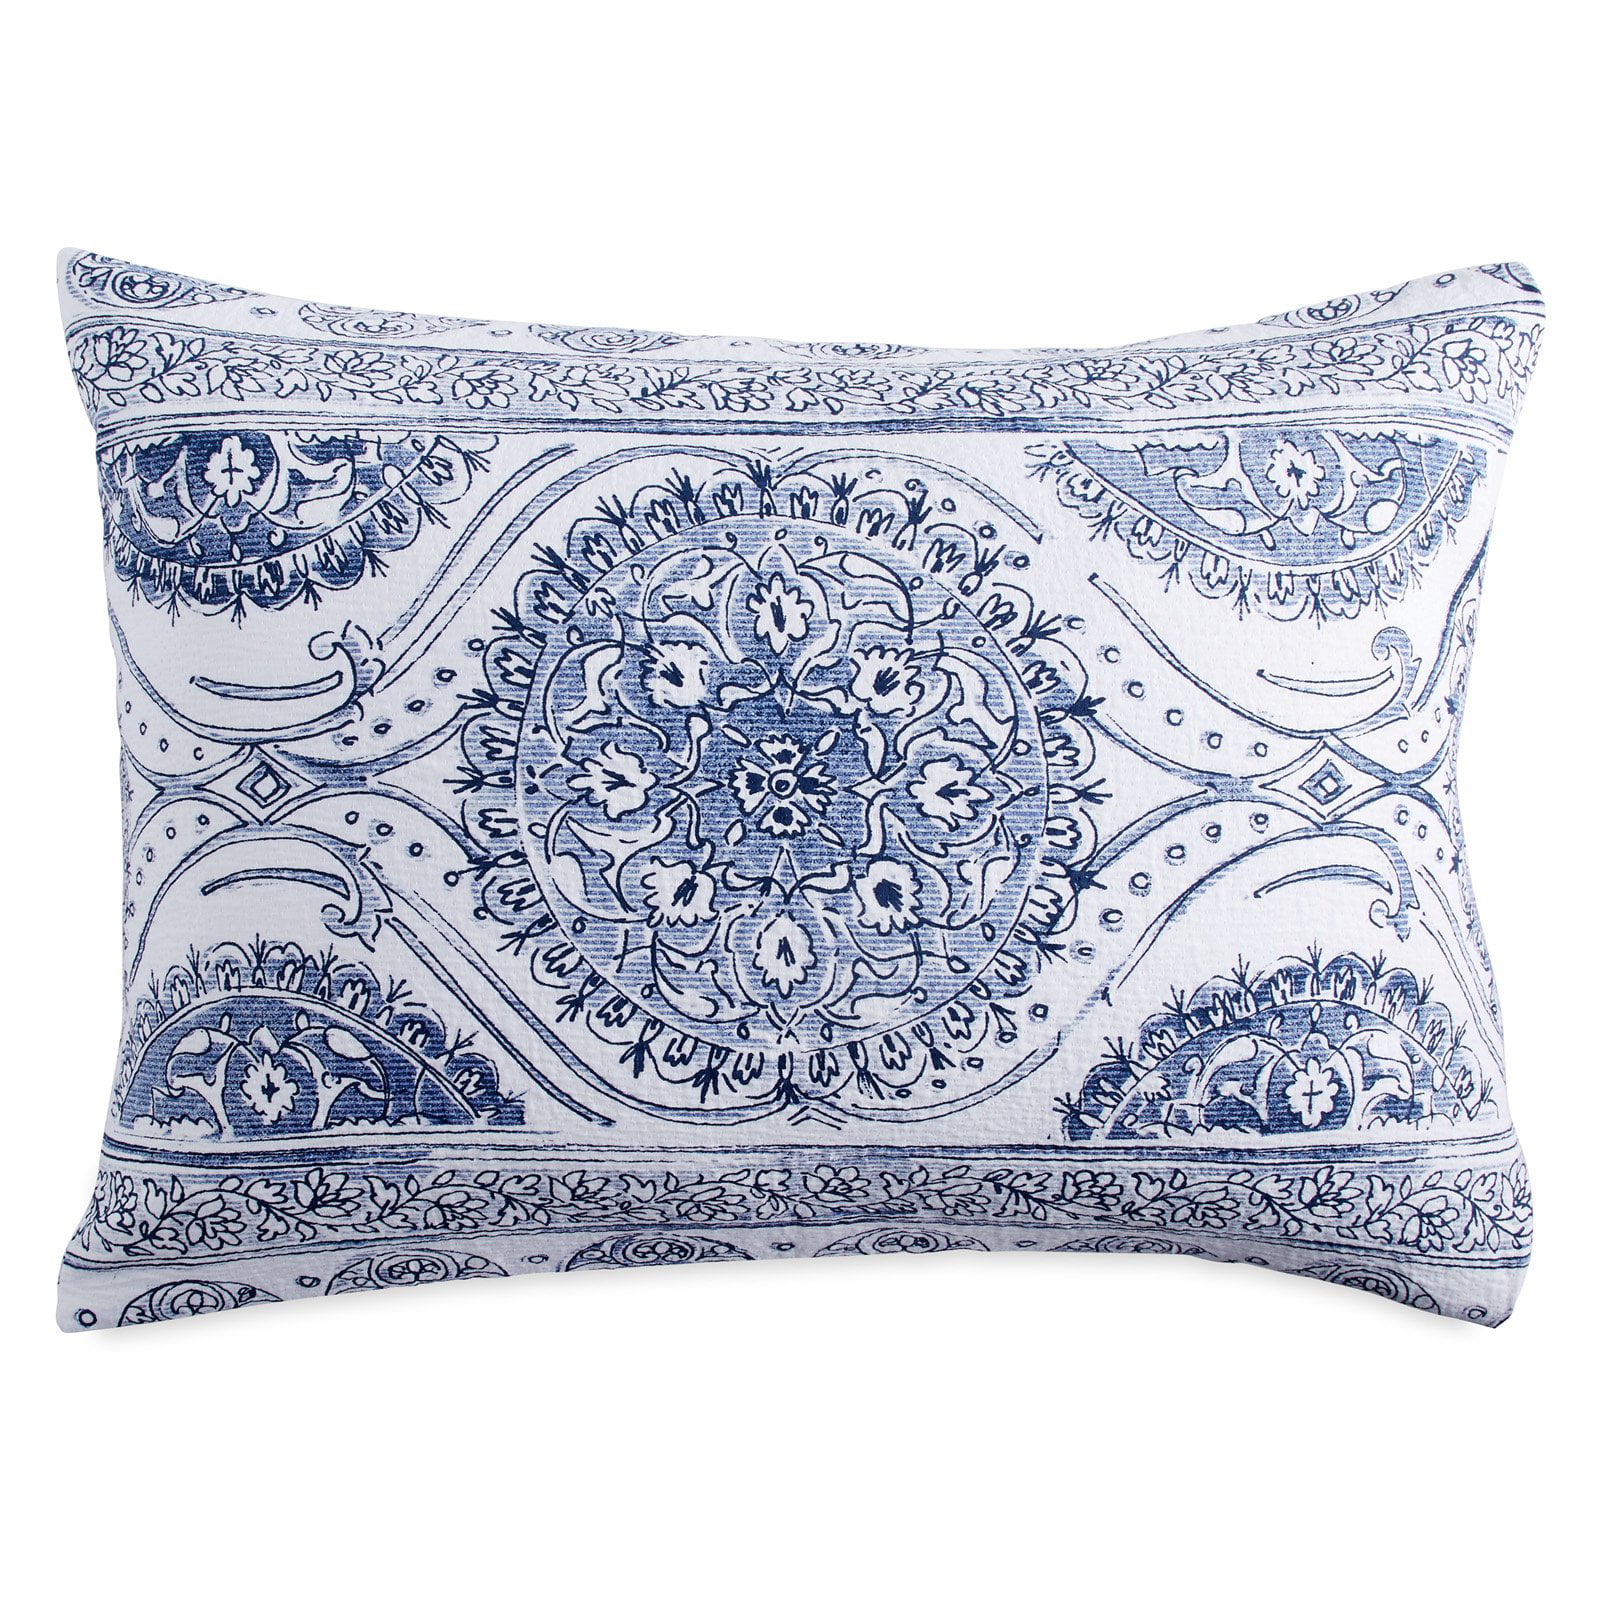 Stunning Linen Matelasse Center Medallion Floral Design Pillow Sham King 